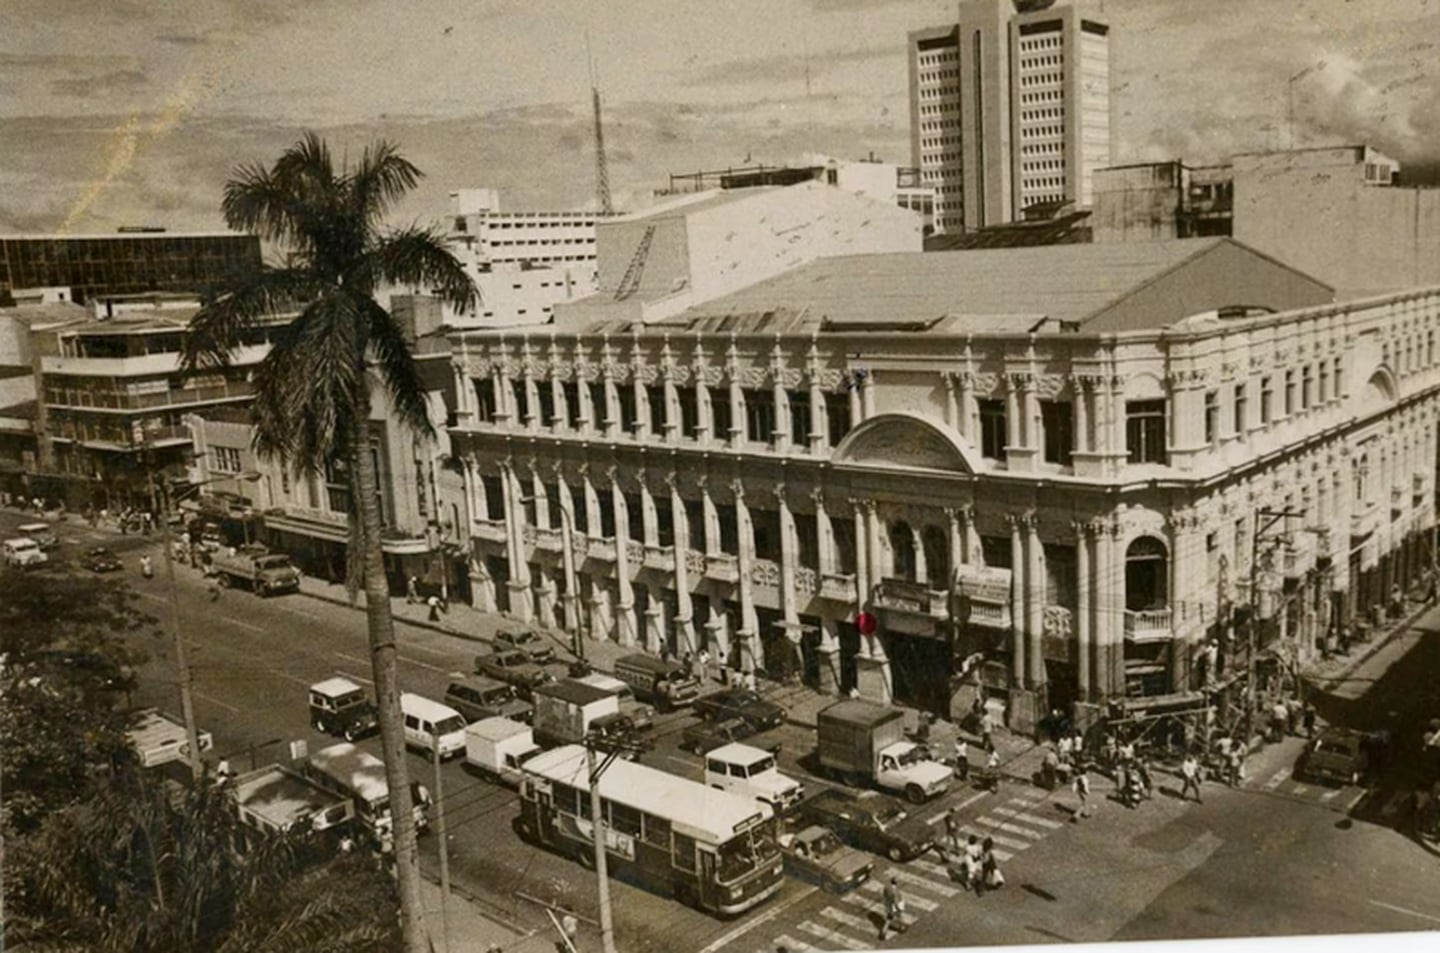 El Teatro Raventós tenía una estructura similar a la del hoy Melico Salazar y se quemó por un incendio en 1967.